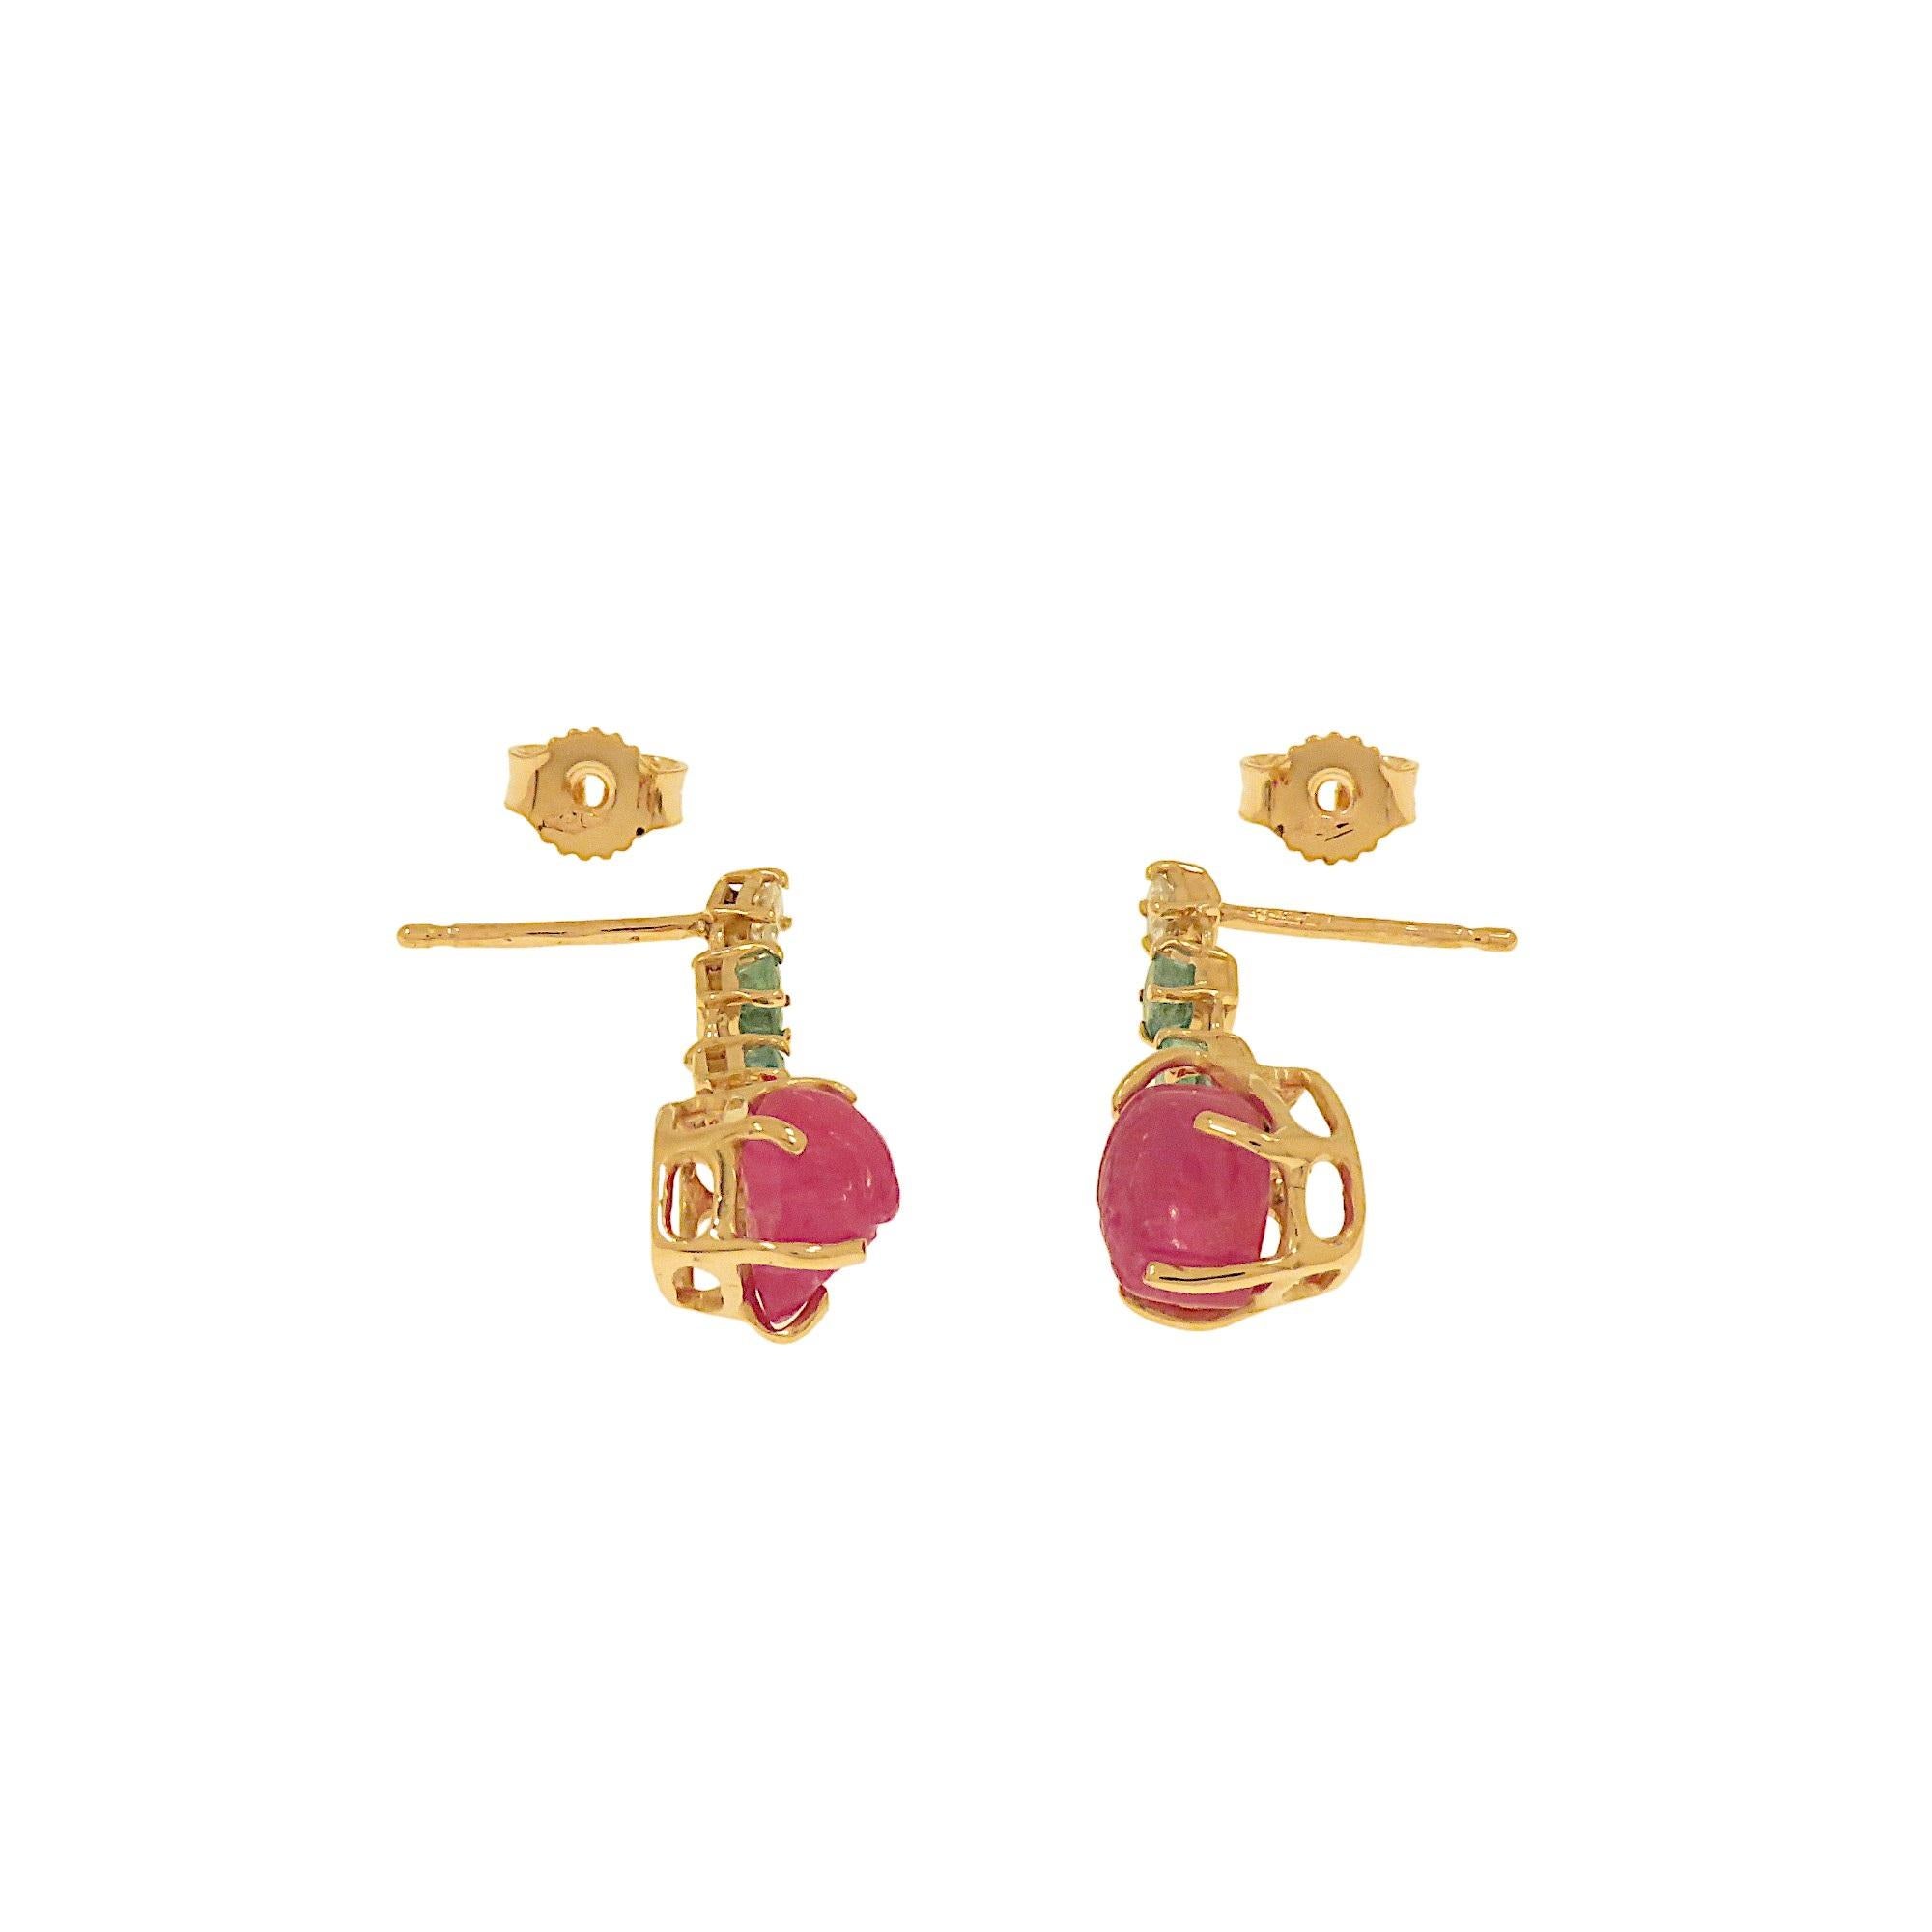 Mixed Cut Botta gioielli orecchini con diamanti rubini e smeraldi in oro rosa For Sale